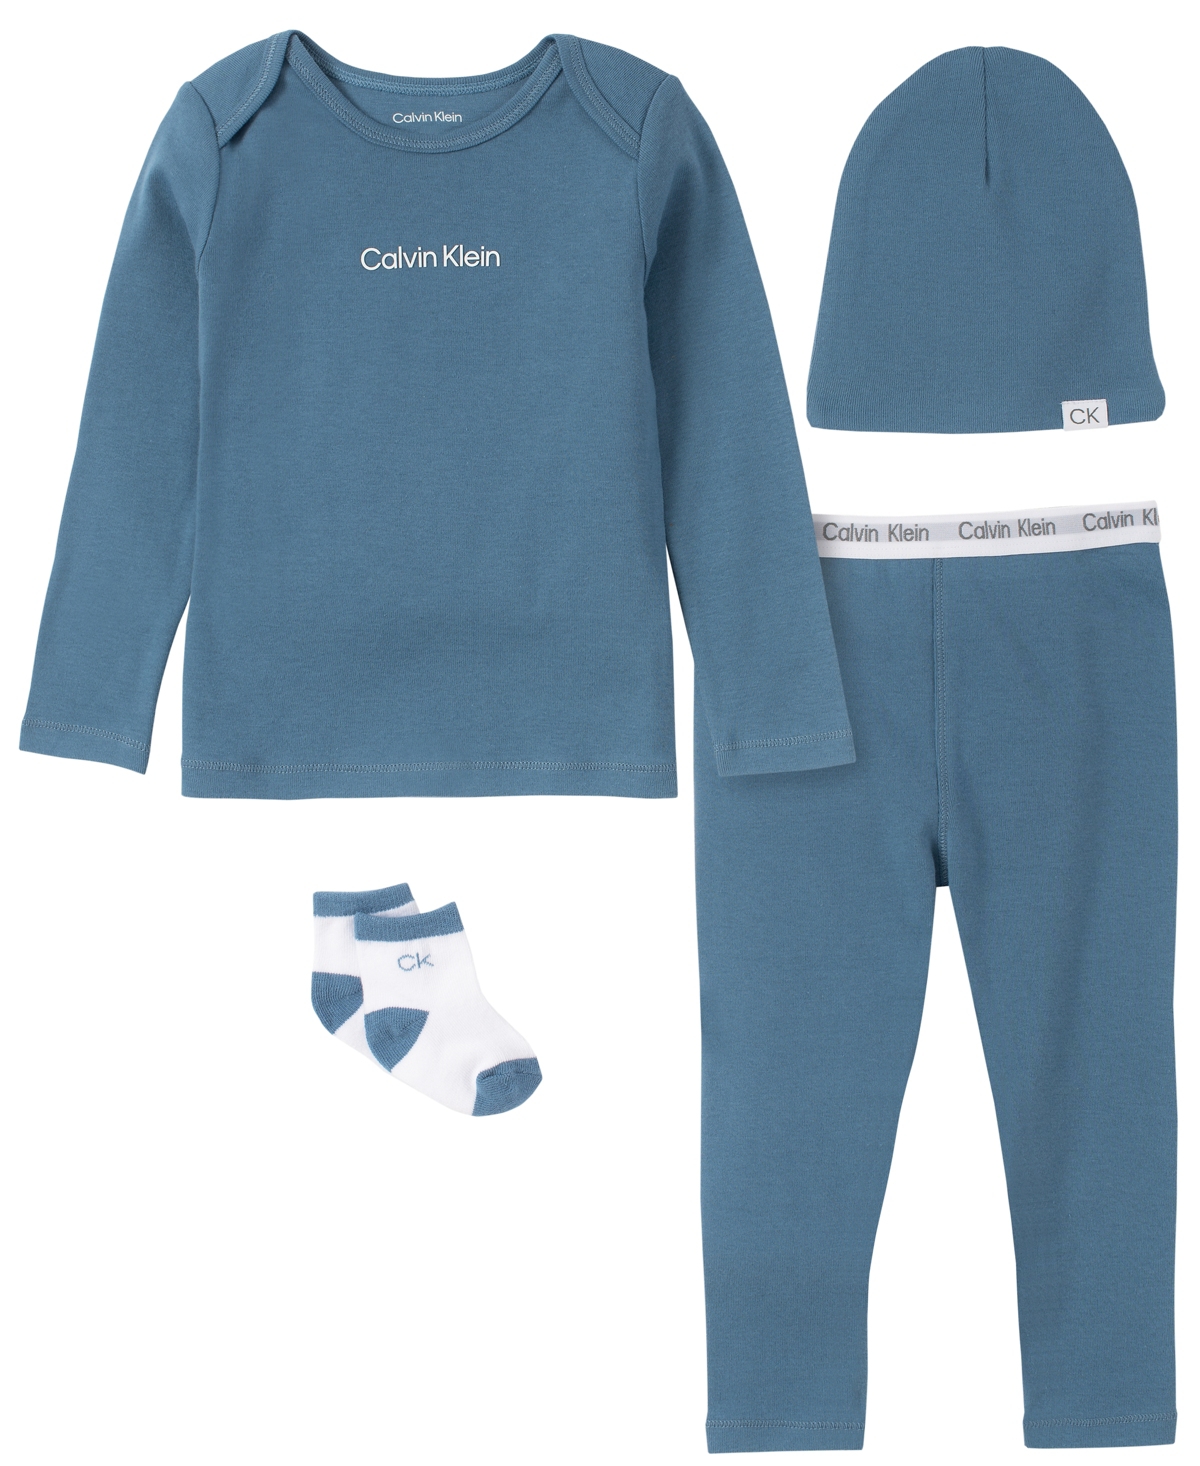 Calvin Klein Baby Boys Or Girls Organic Cotton Layette, 4 Piece Set In Blue